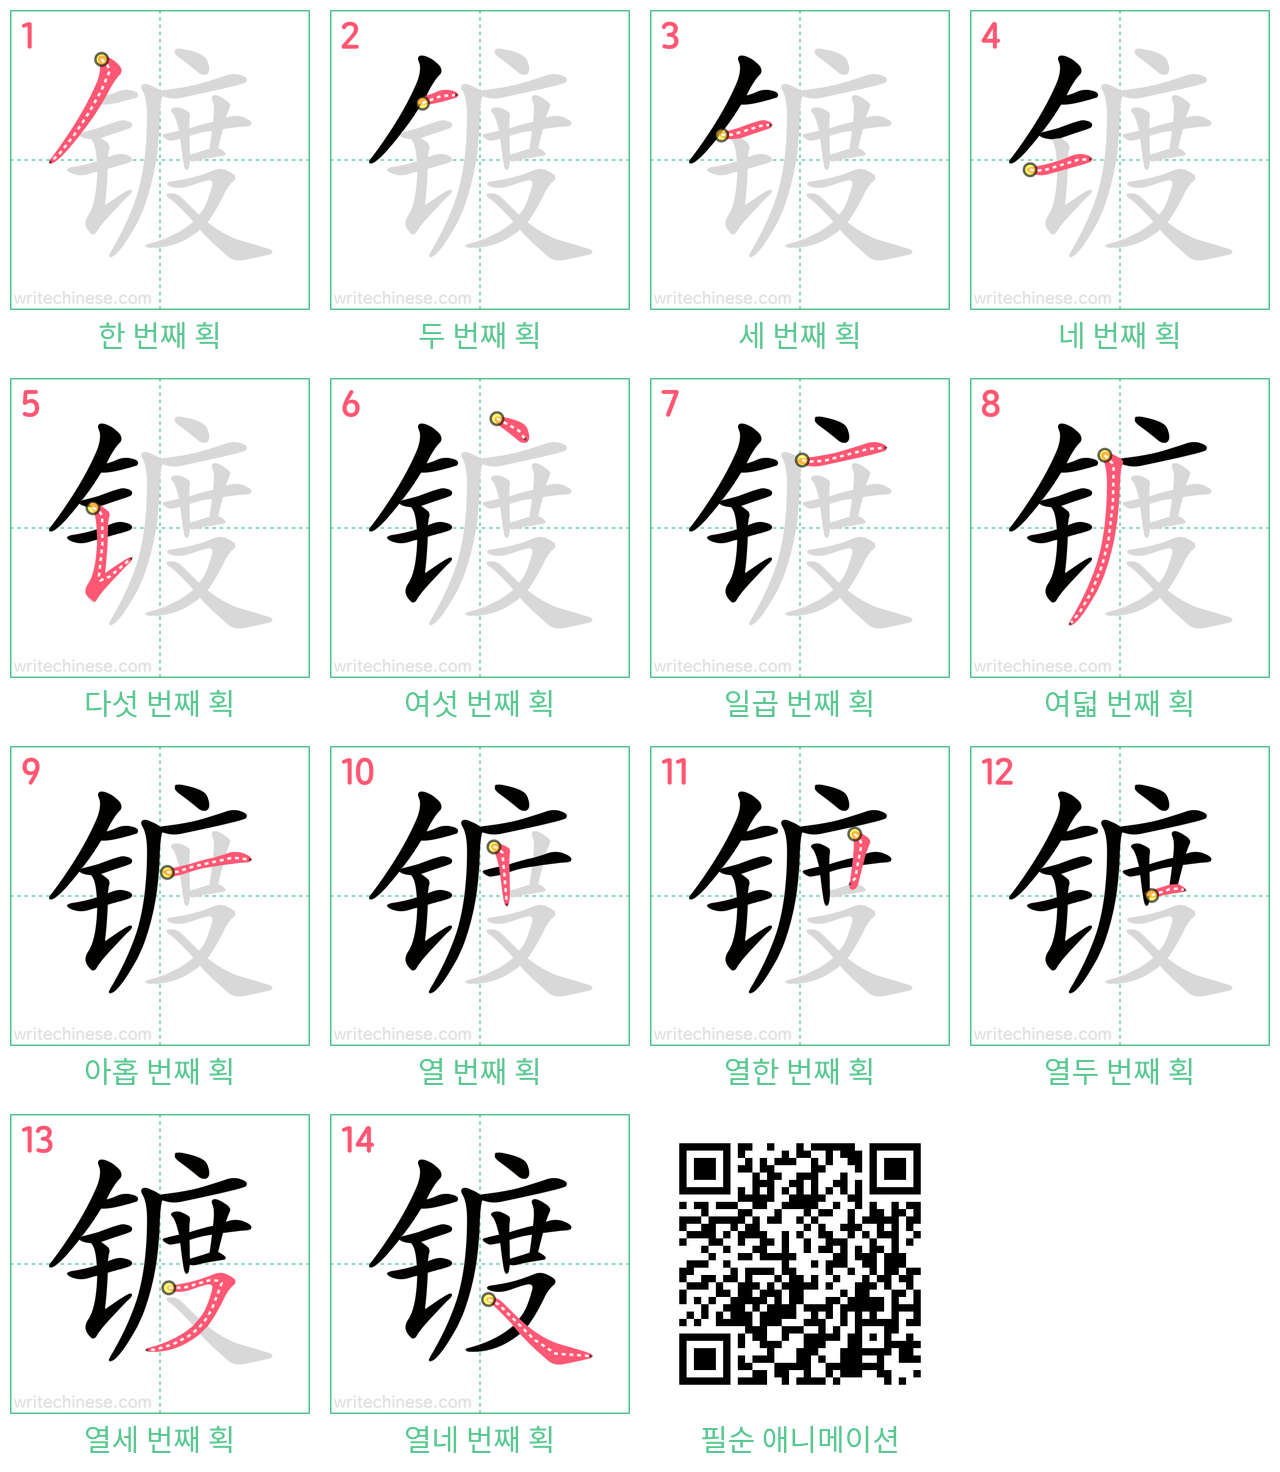 镀 step-by-step stroke order diagrams